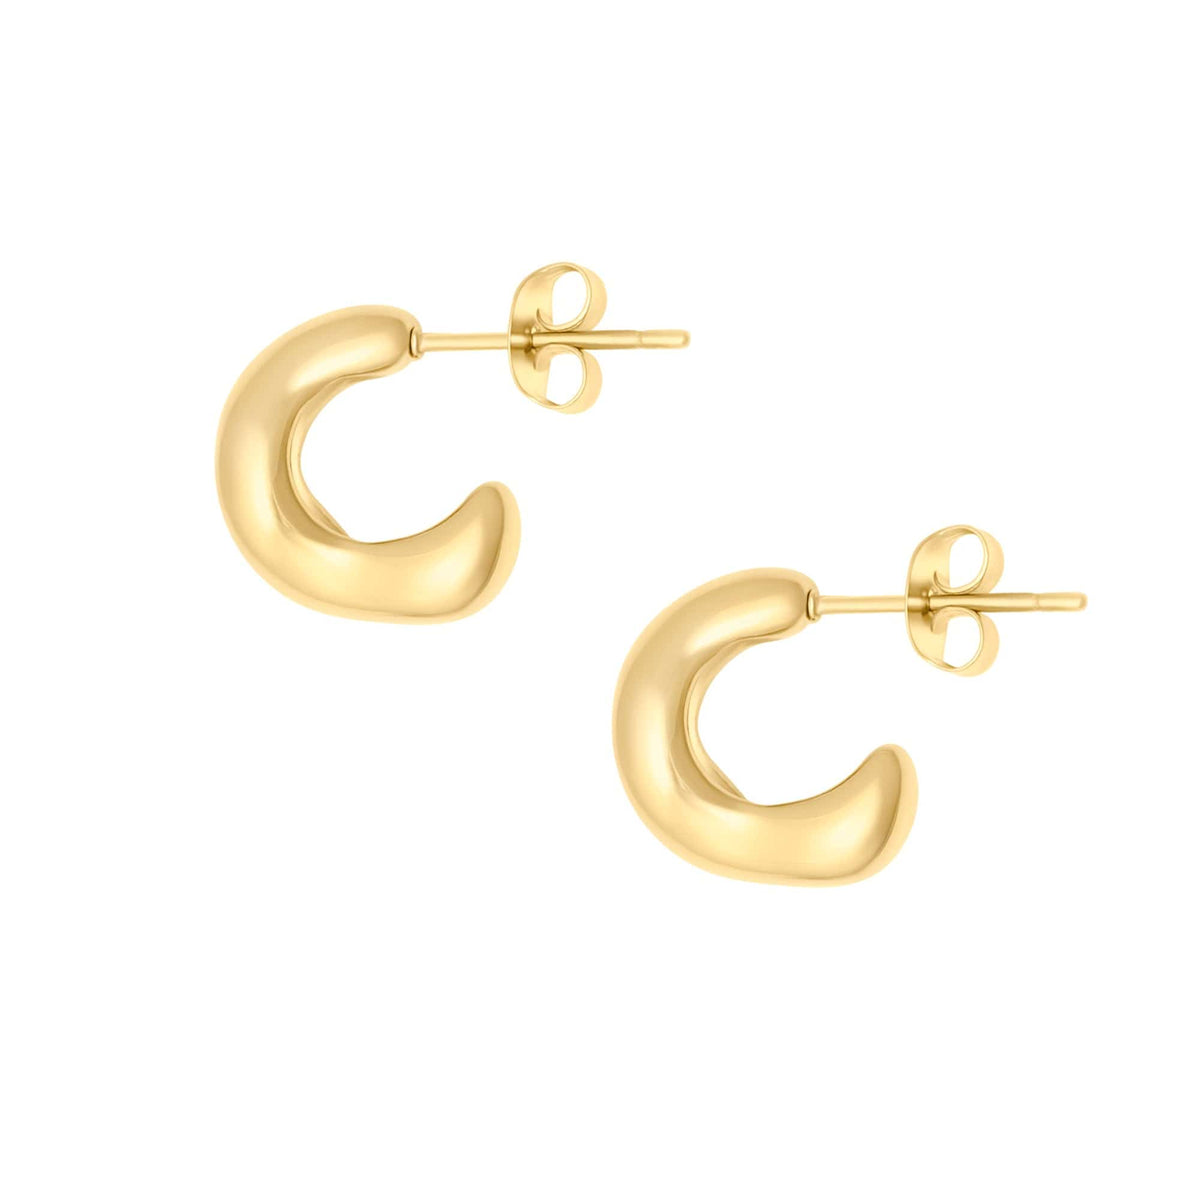 BohoMoon Stainless Steel Bellini Hoop Earrings Gold